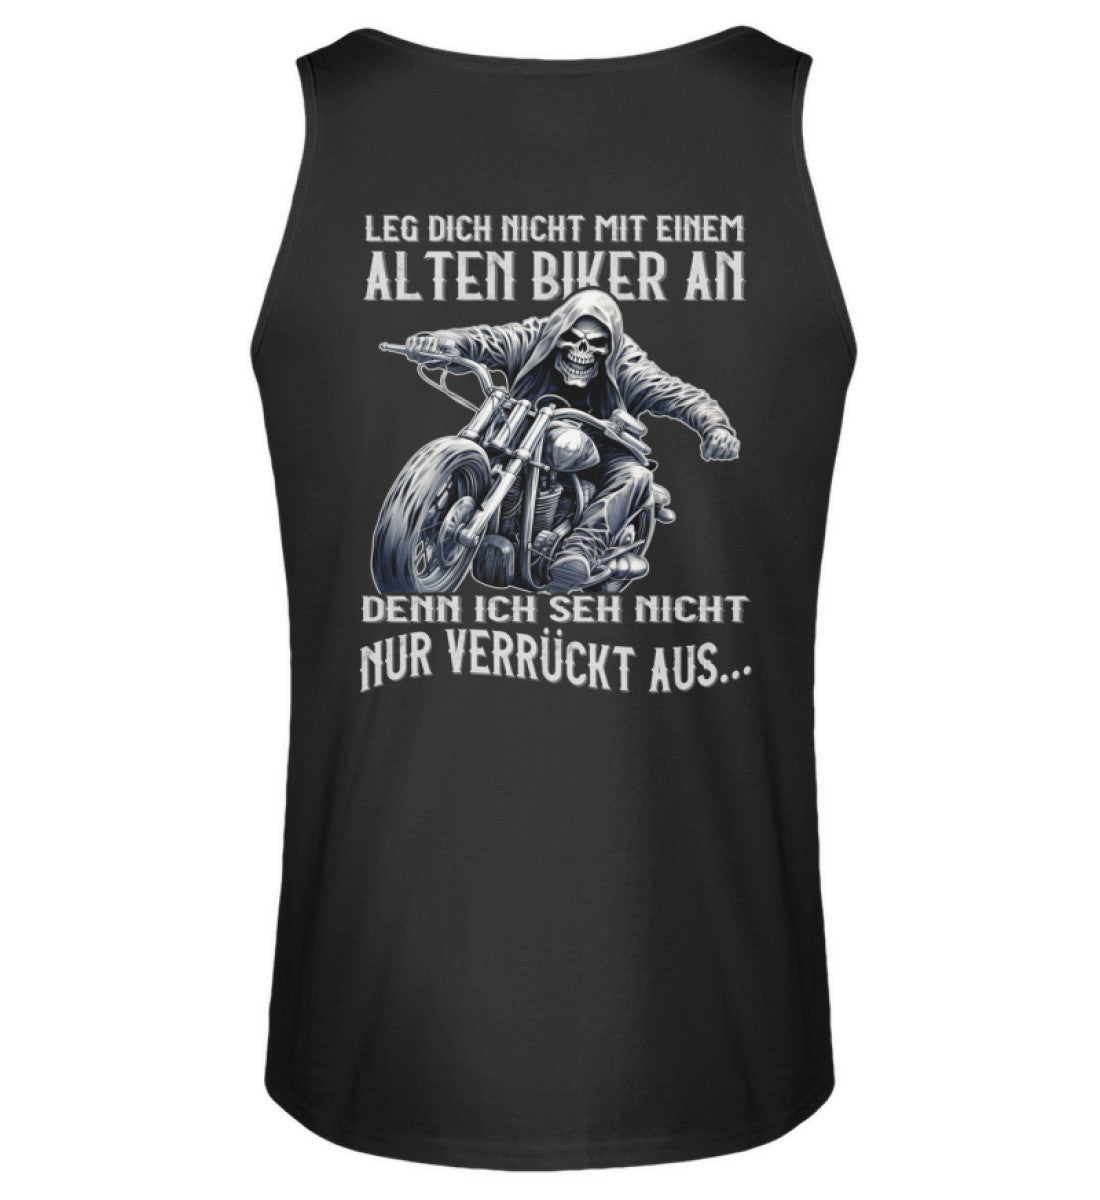 Ein Biker Tanktop für Motorradfahrer von Wingbikers mit dem Aufdruck, Leg dich nicht mit einem alten Biker an, denn ich seh nicht nur verrückt aus - mit Back Print, in schwarz.